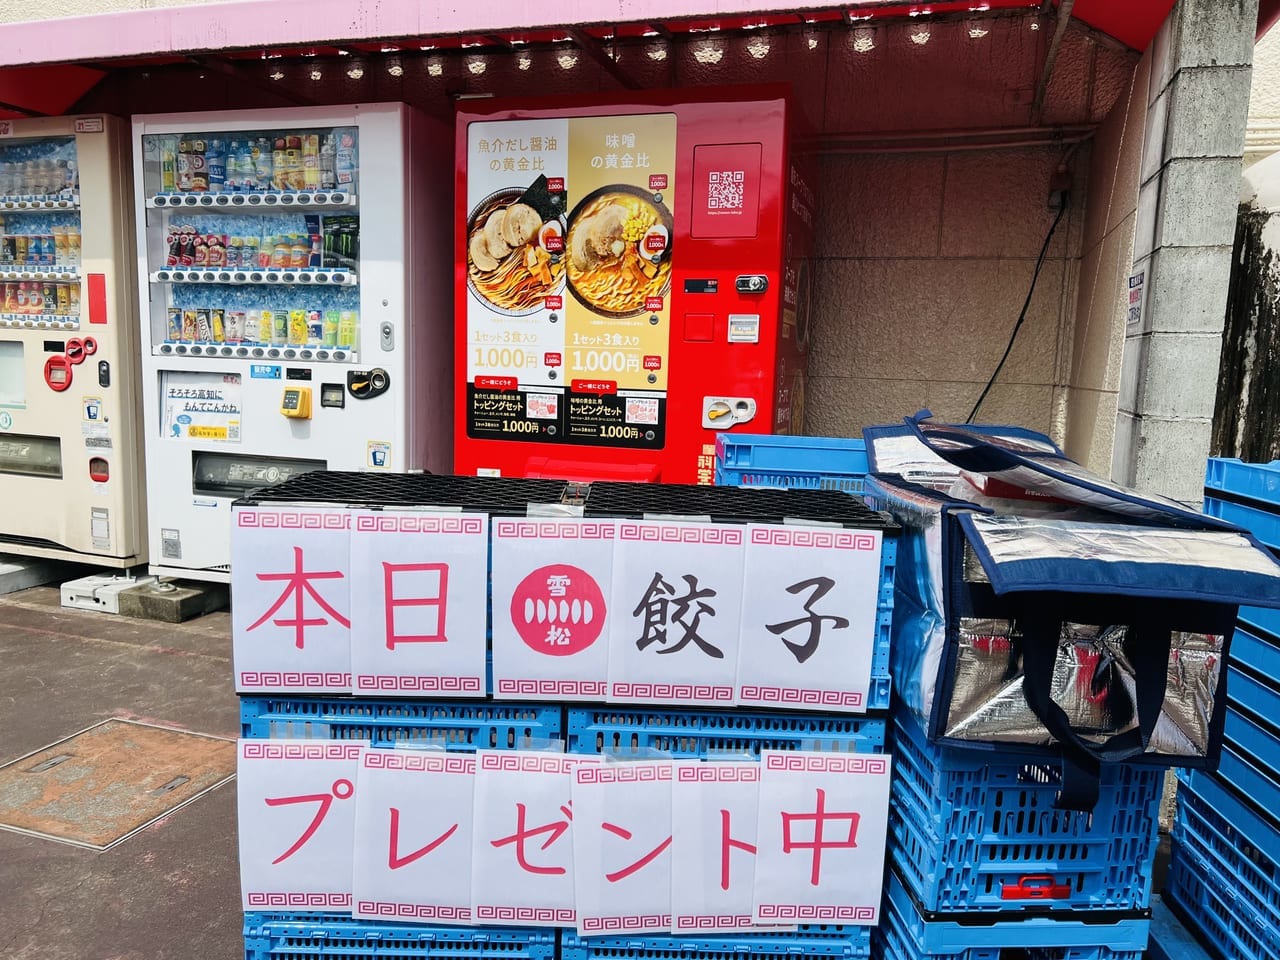 「日本ラーメン科学研究所 イオン高知旭店」のオープニングキャンペーンの様子